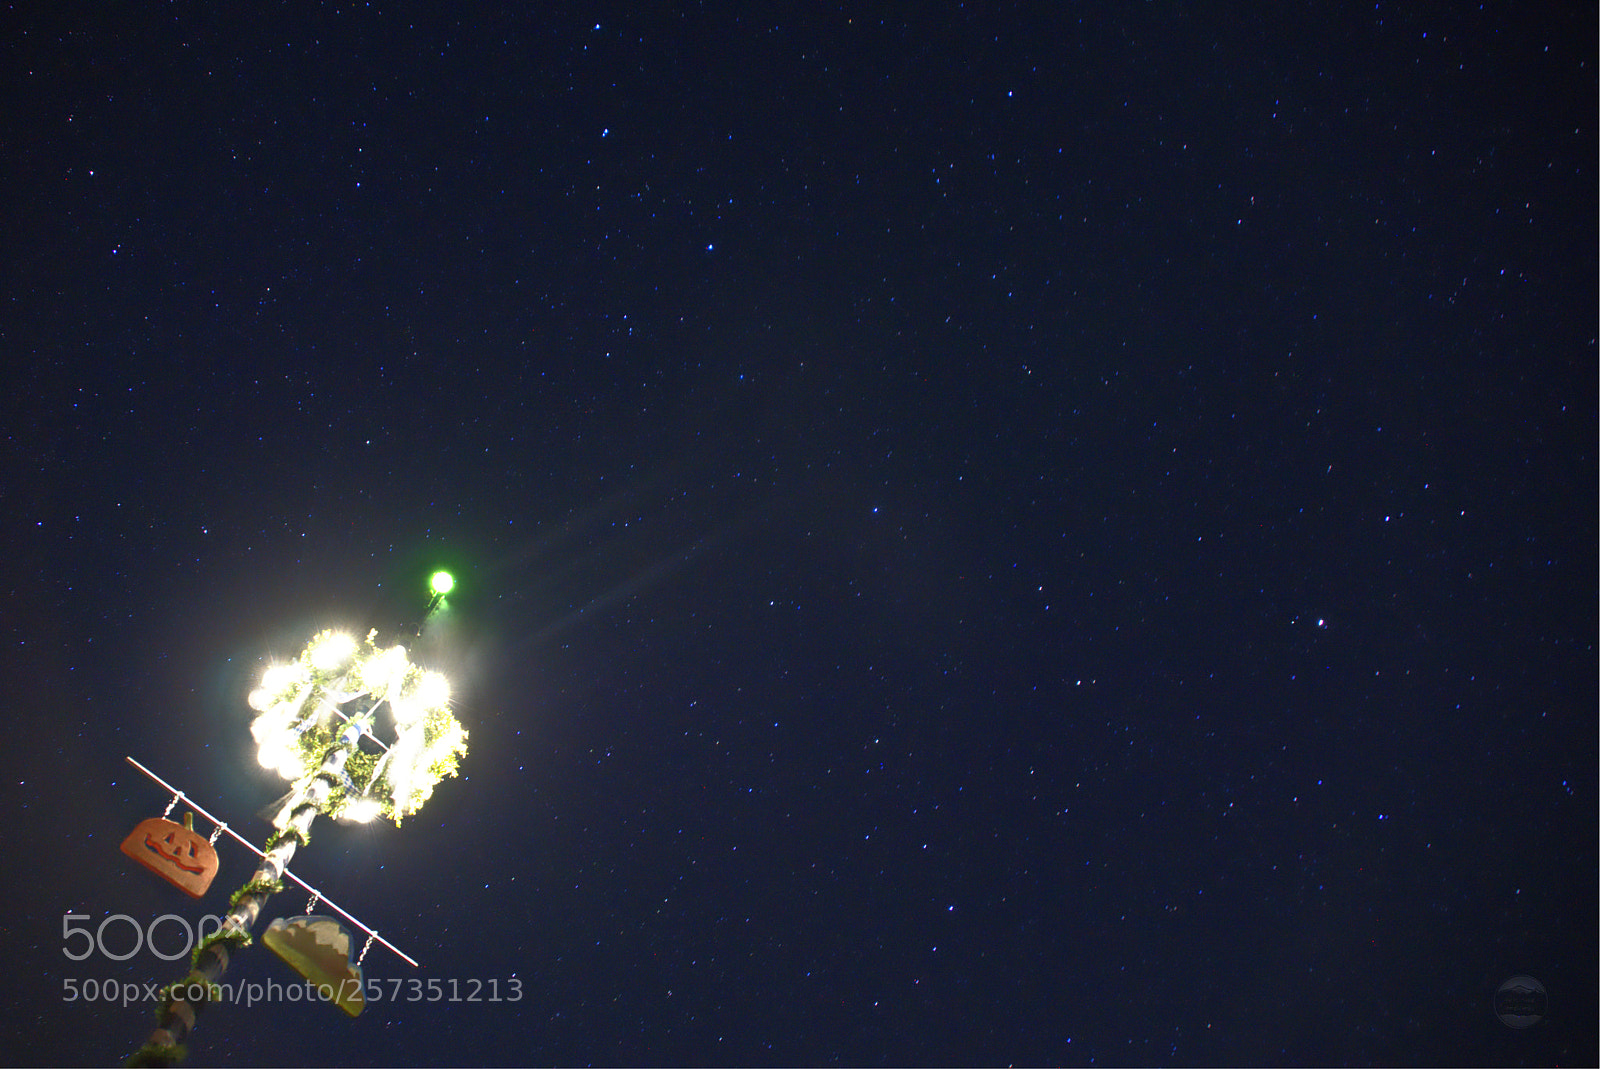 Sony ILCA-77M2 sample photo. May tree night sky photography